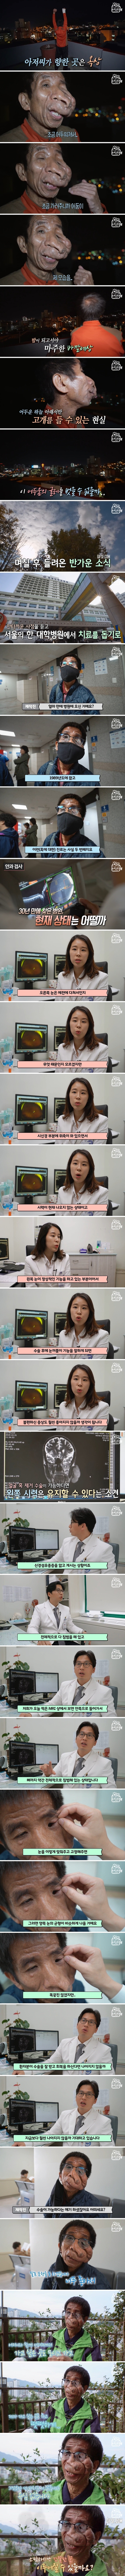 [1부] 얼굴을 뒤덮은 혹, 신경섬유종을 앓고 있는 김진욱 씨의 사연